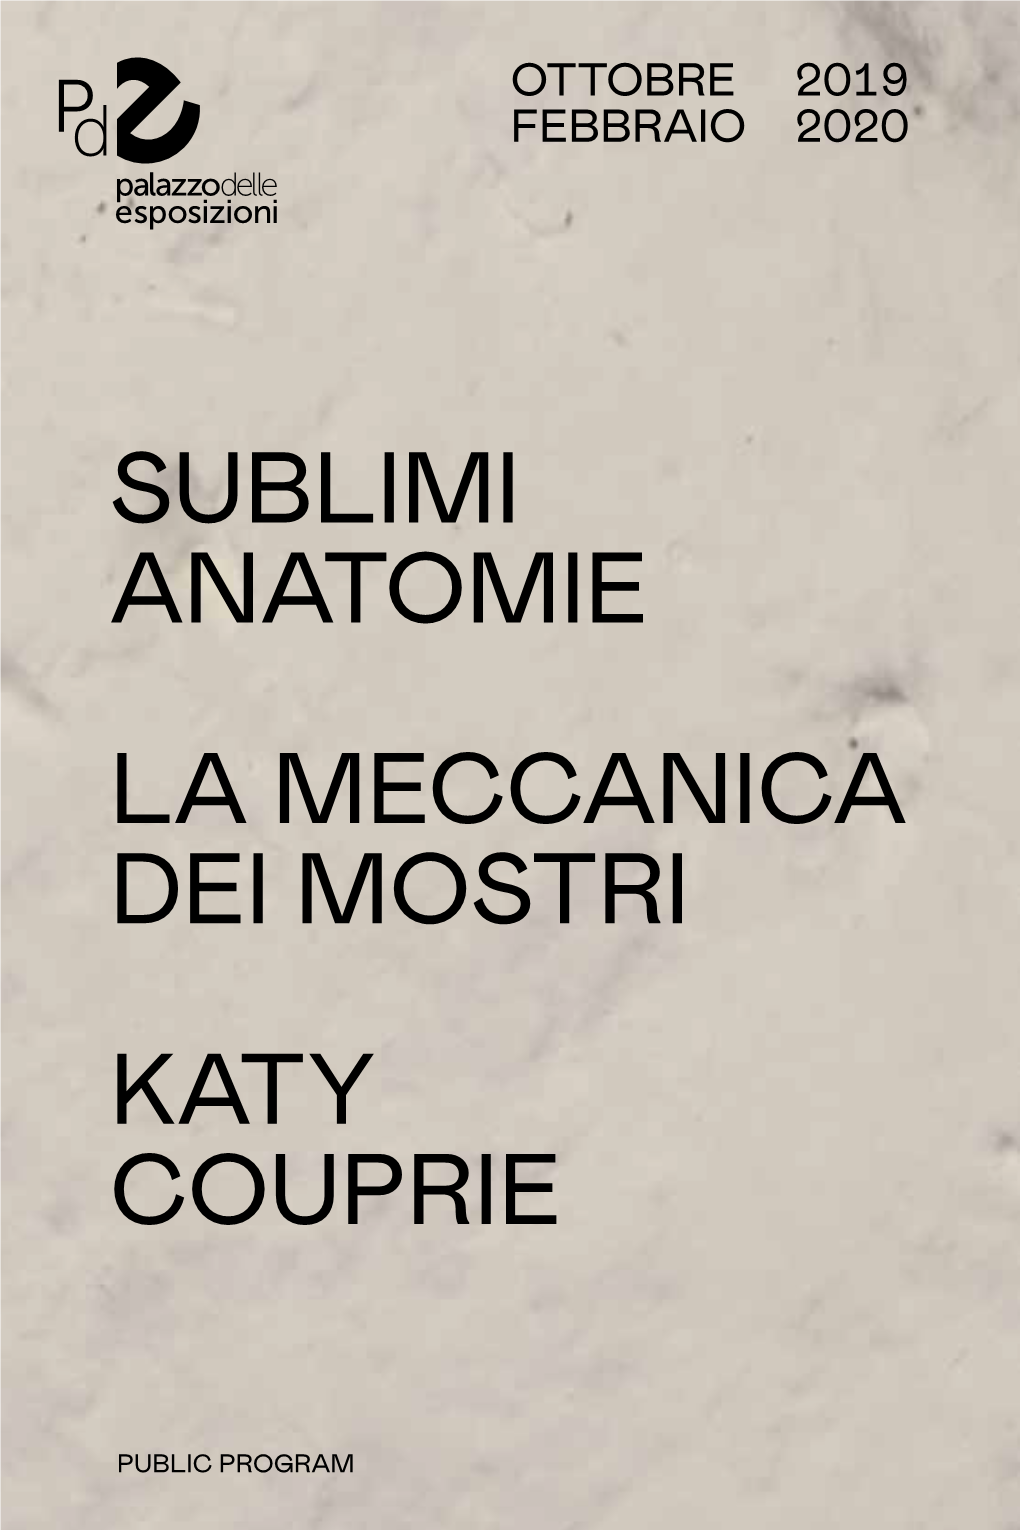 Sublimi Anatomie La Meccanica Dei Mostri Katy Couprie